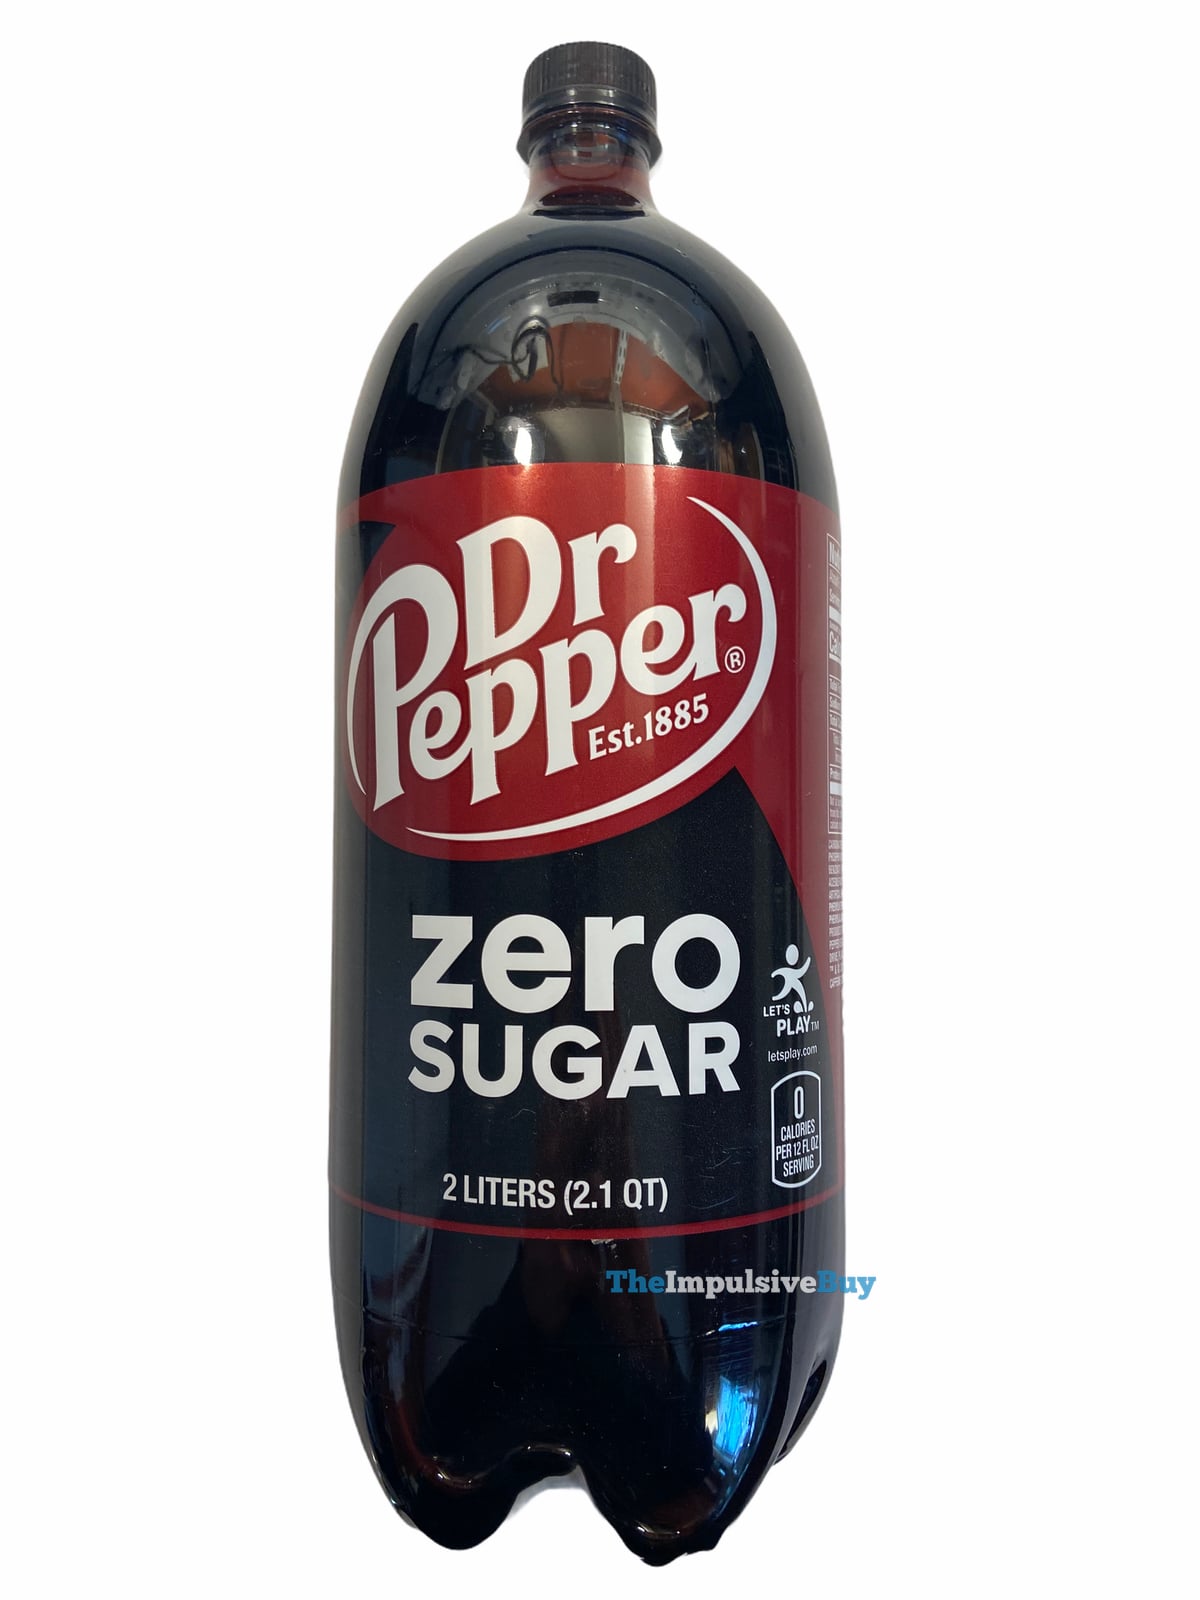 Dr Pepper Flavors, Ranked [Taste Test]